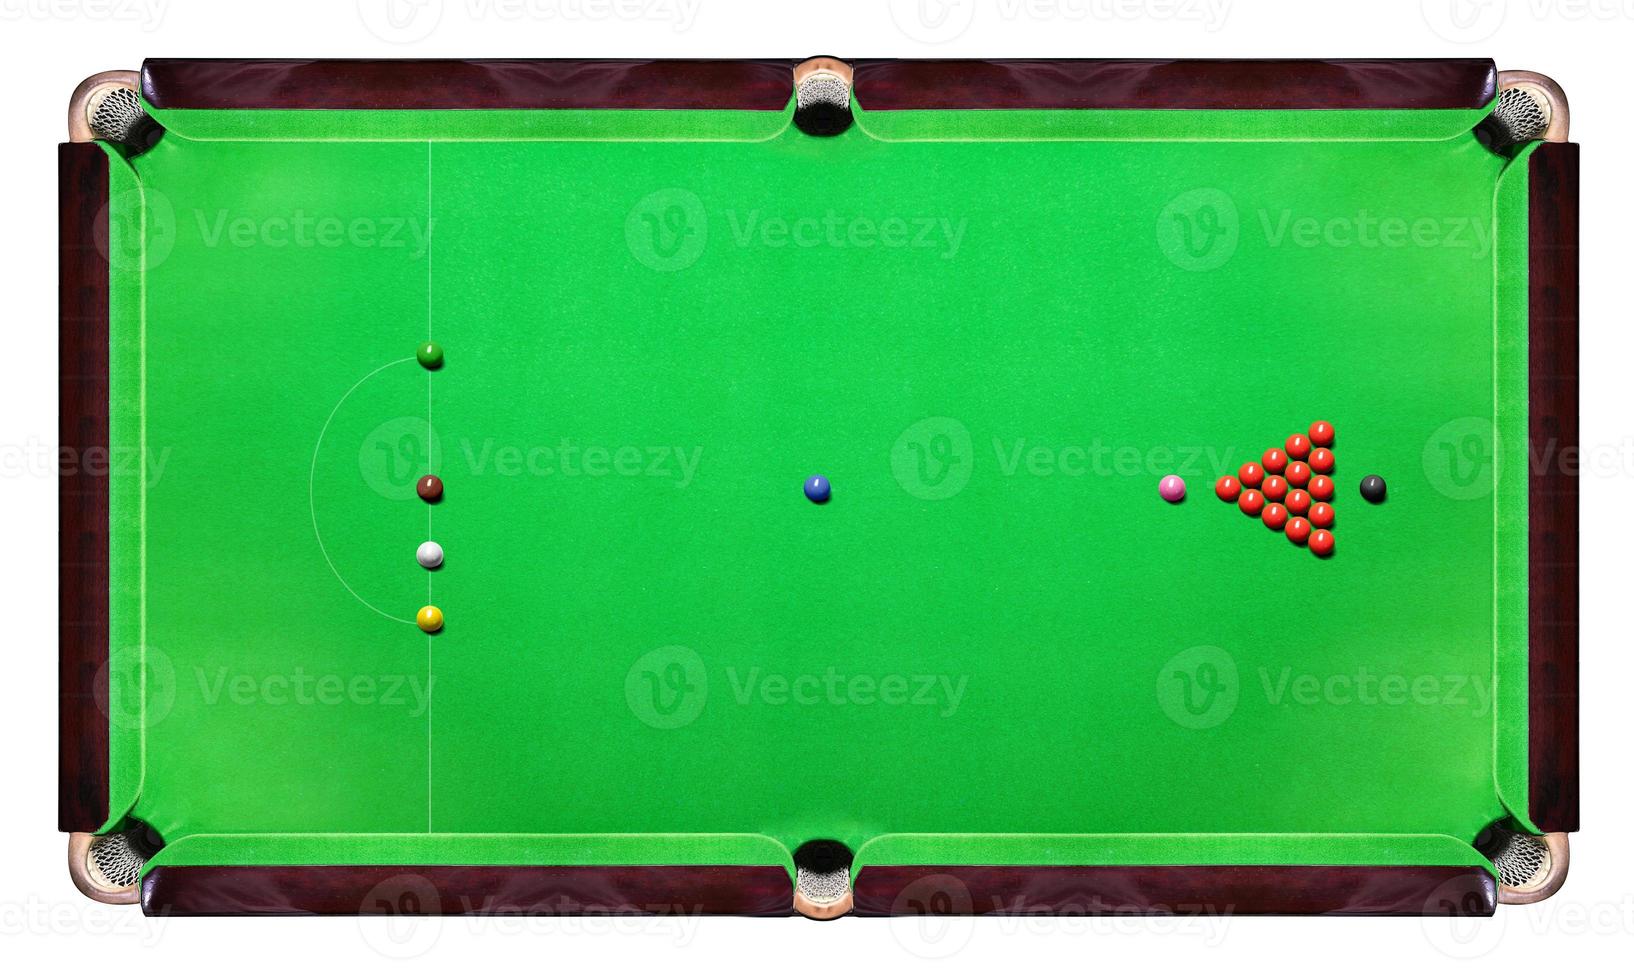 snookertafel met veelkleurige snookerballen op groen bovenaanzicht foto